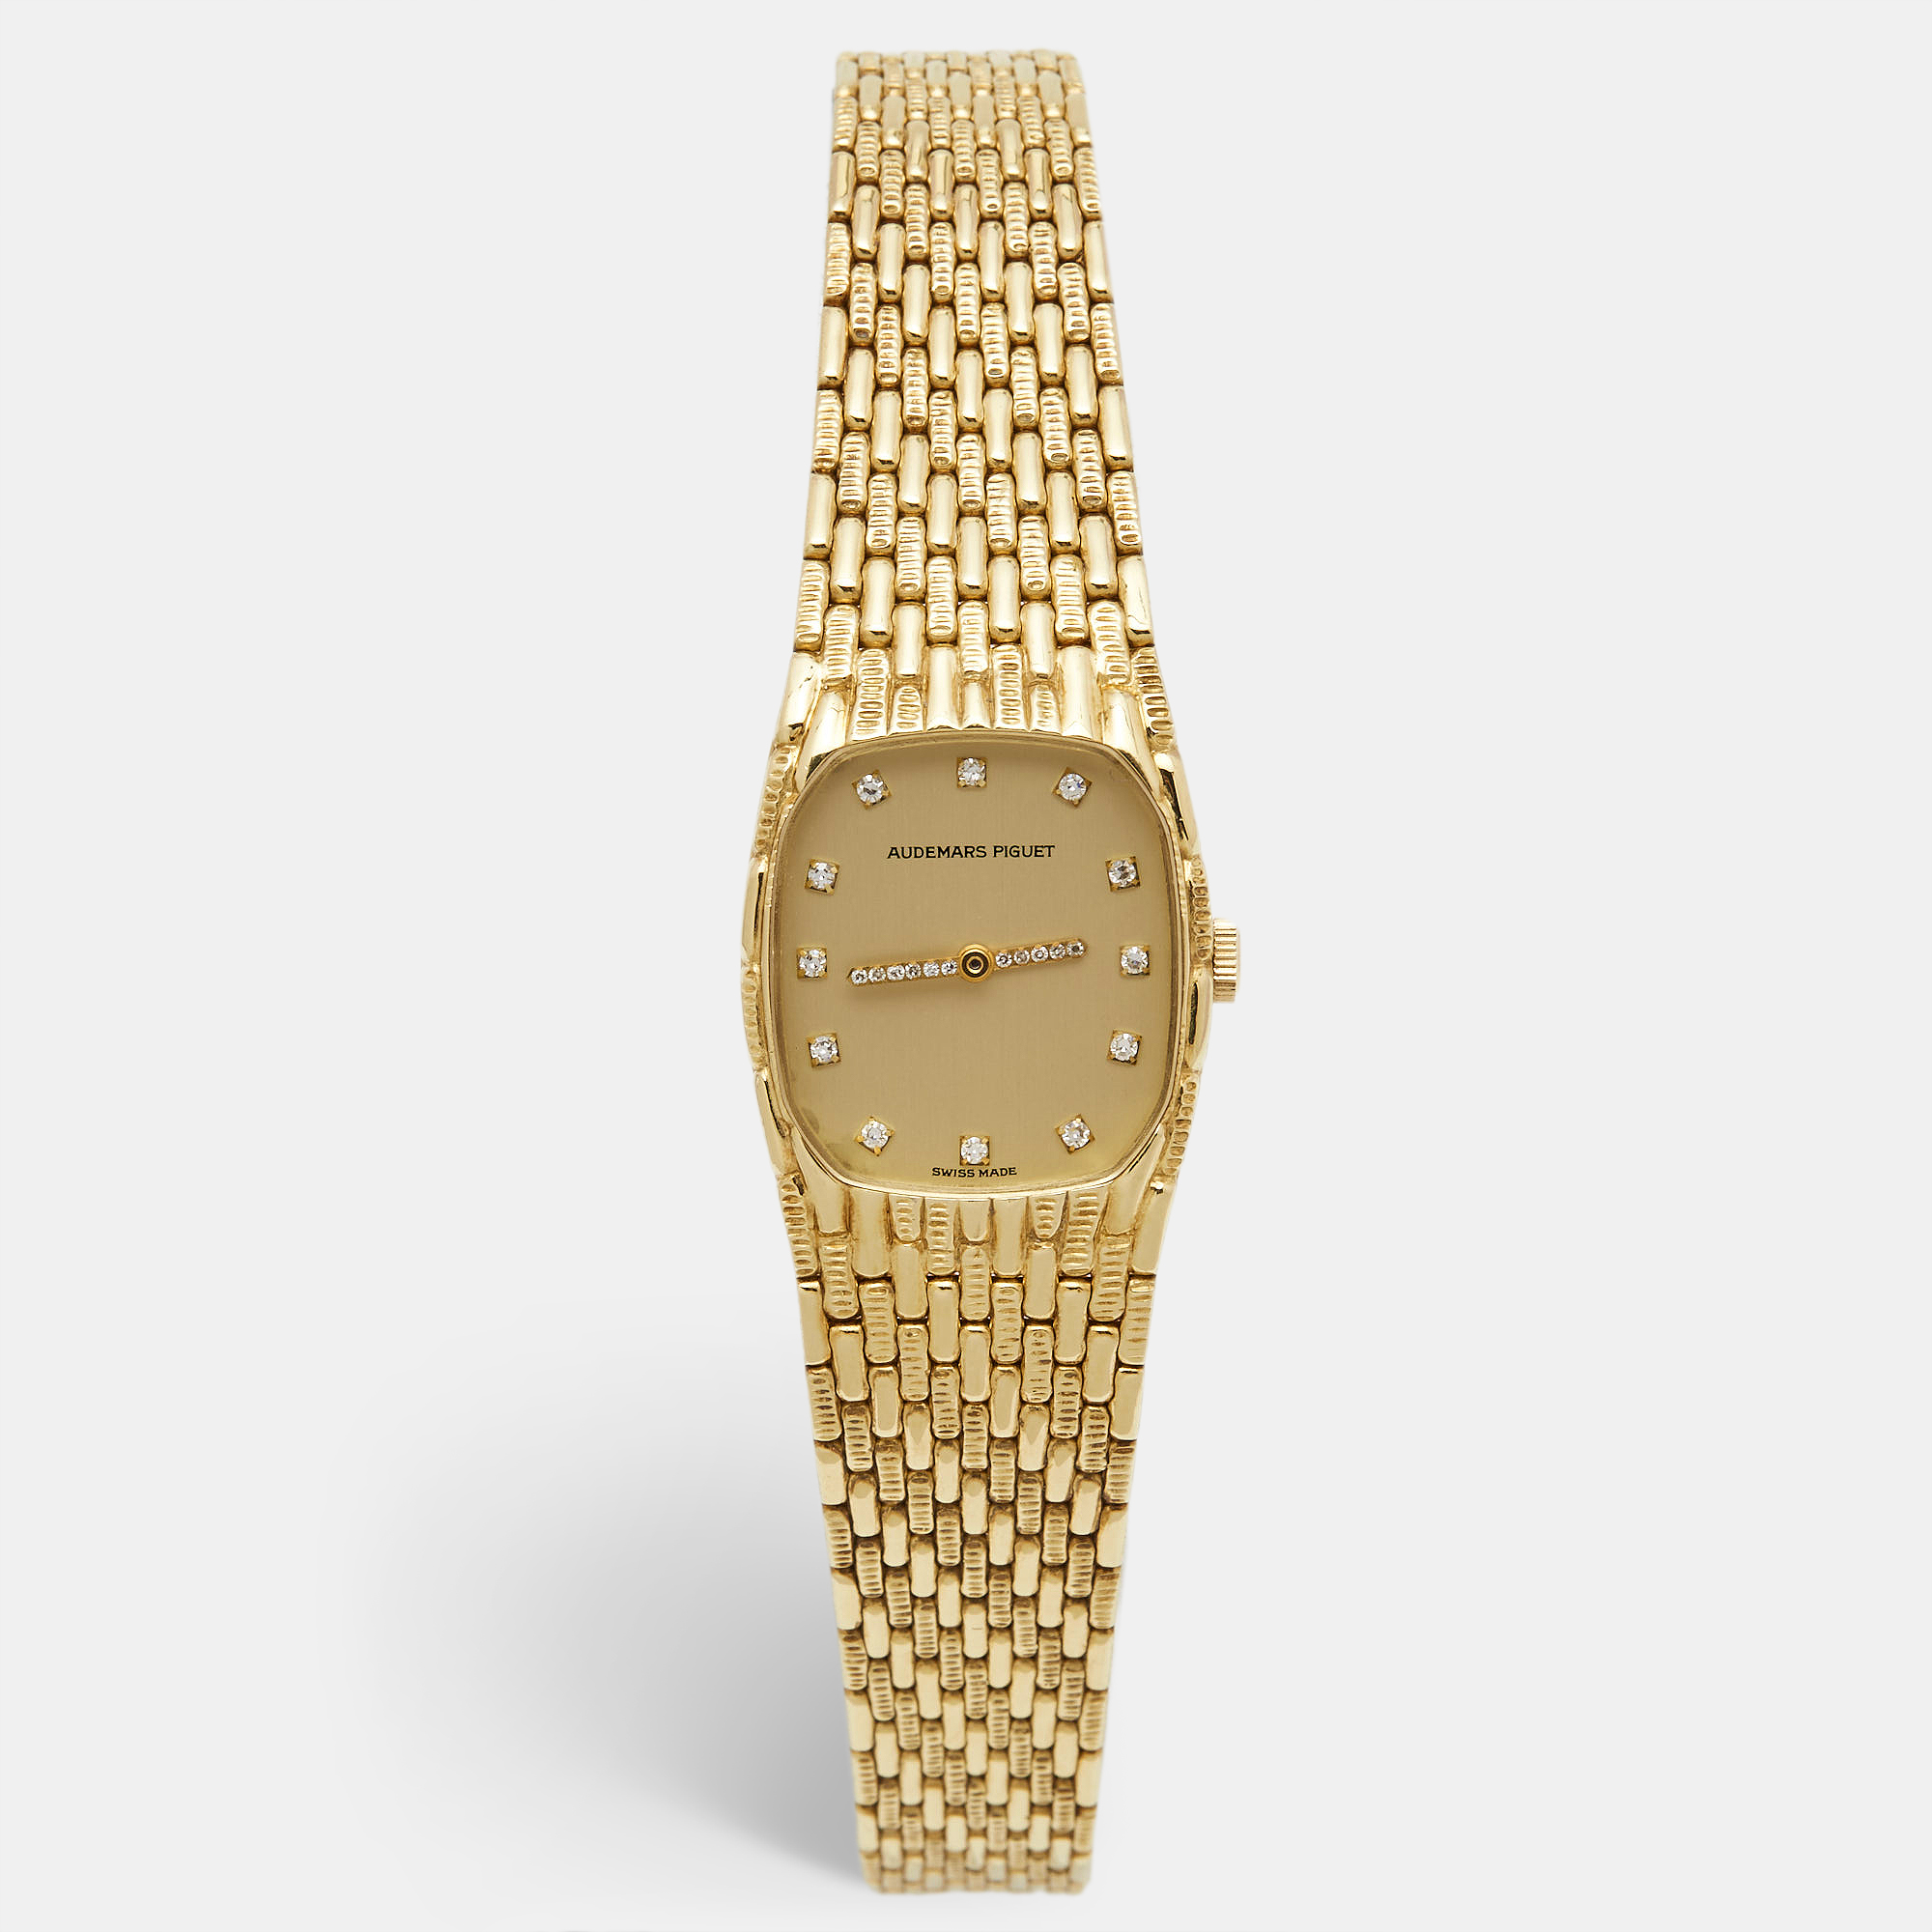 Audemars piguet champagne diamond 18k yellow gold women's wristwatch 21 mm